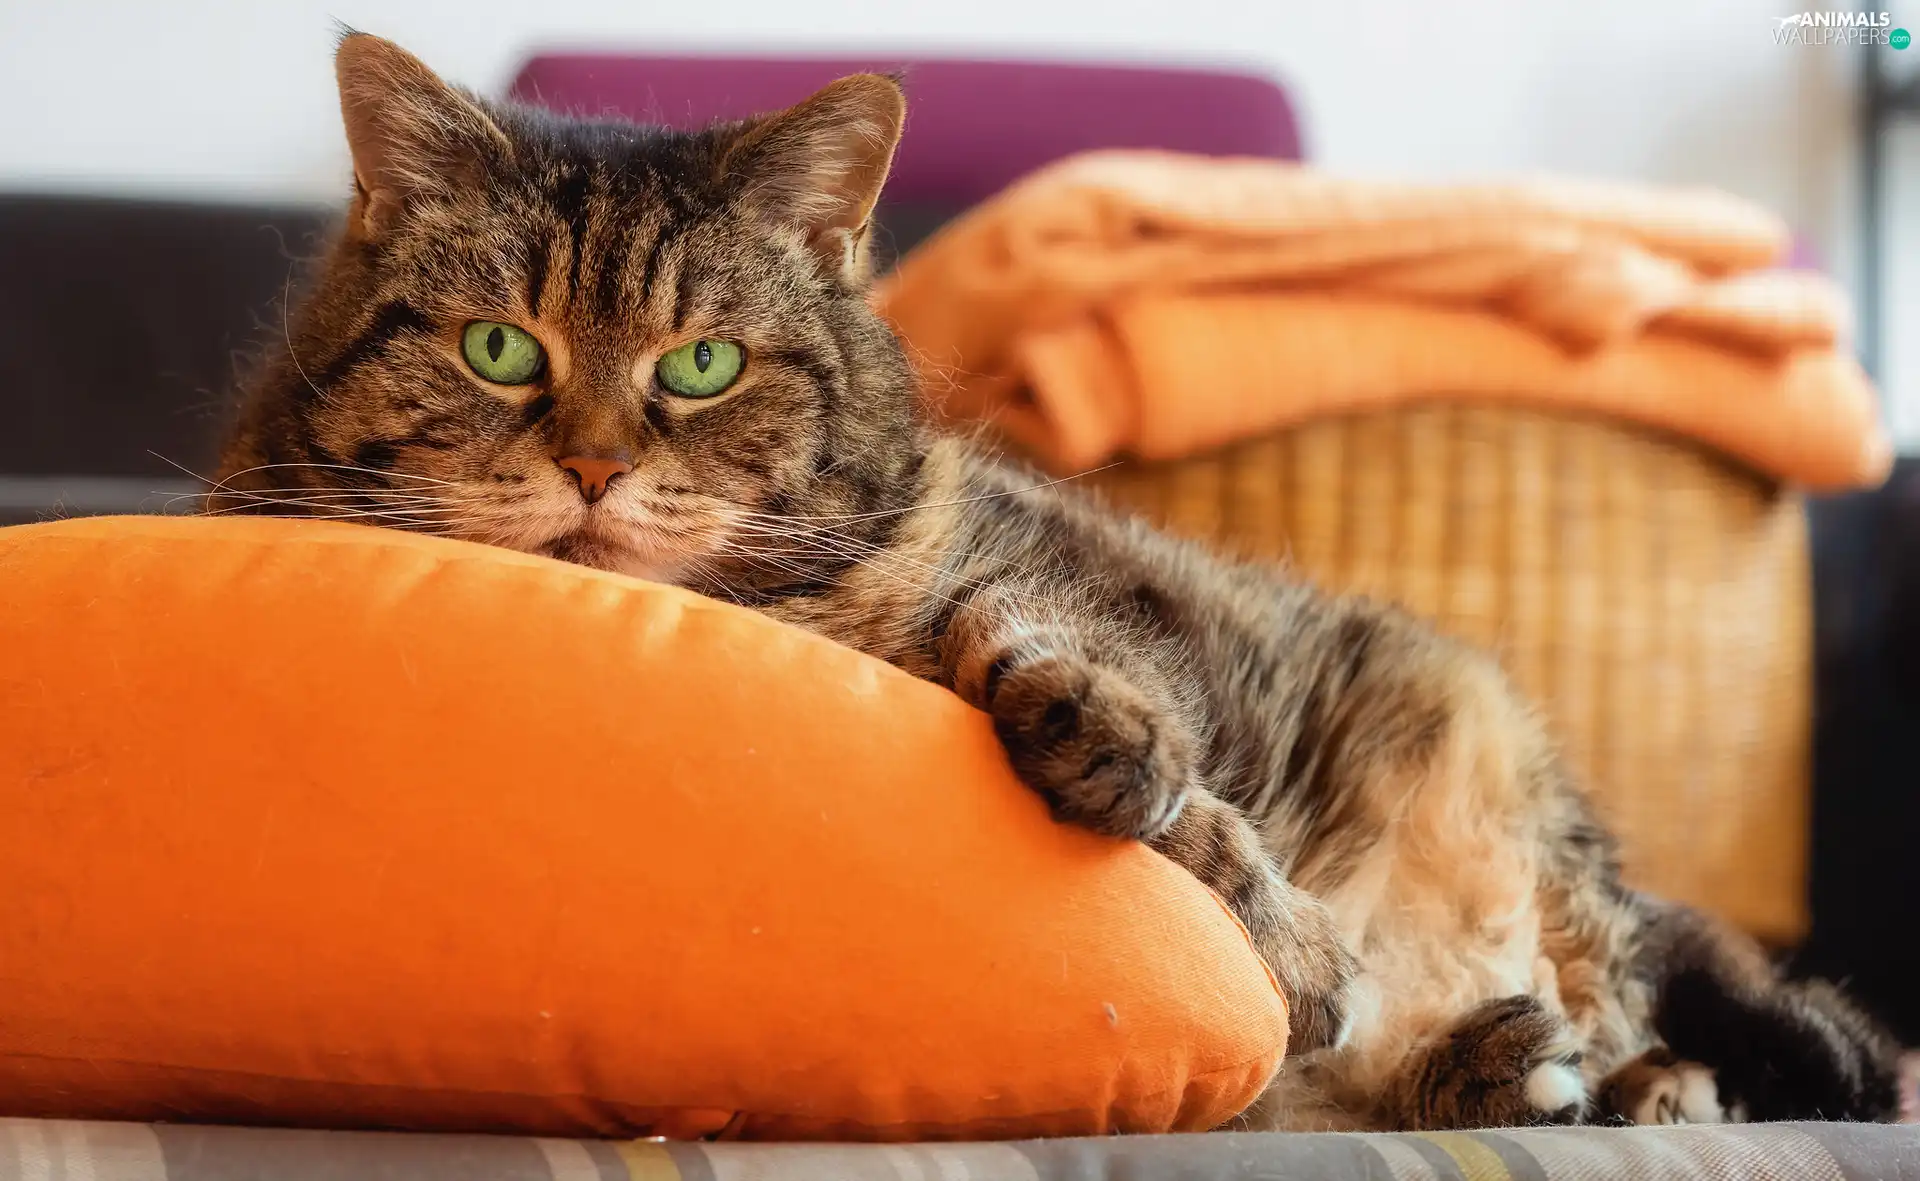 Pillow, cat, Orange